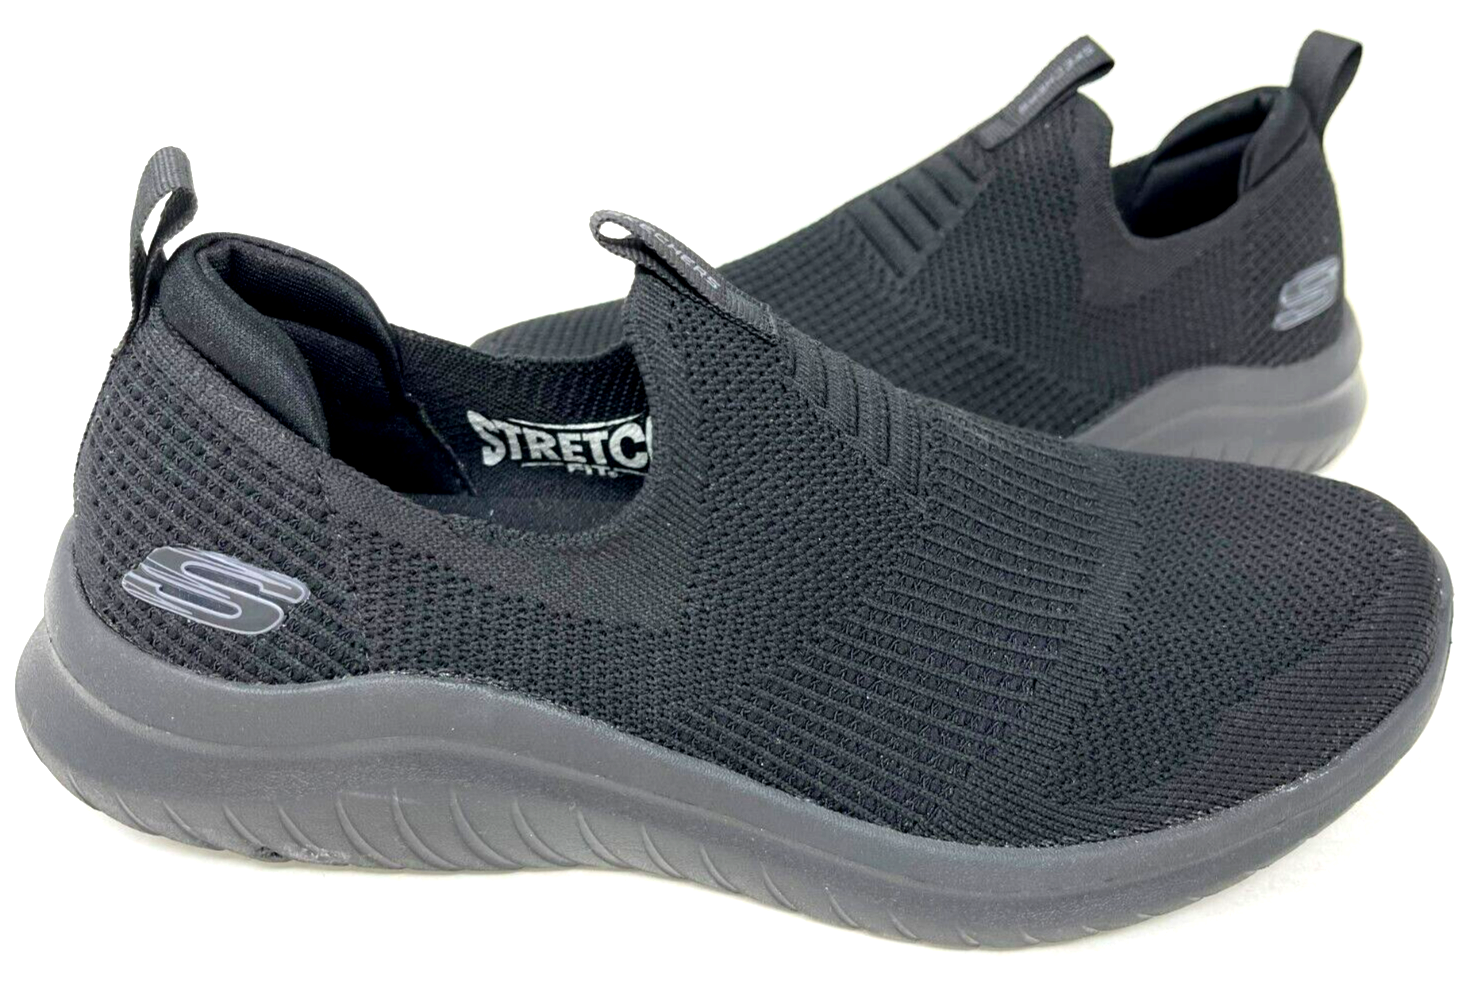 Skechers Men's Ultra Flex 2.0 Mirkon Walking Shoes Black